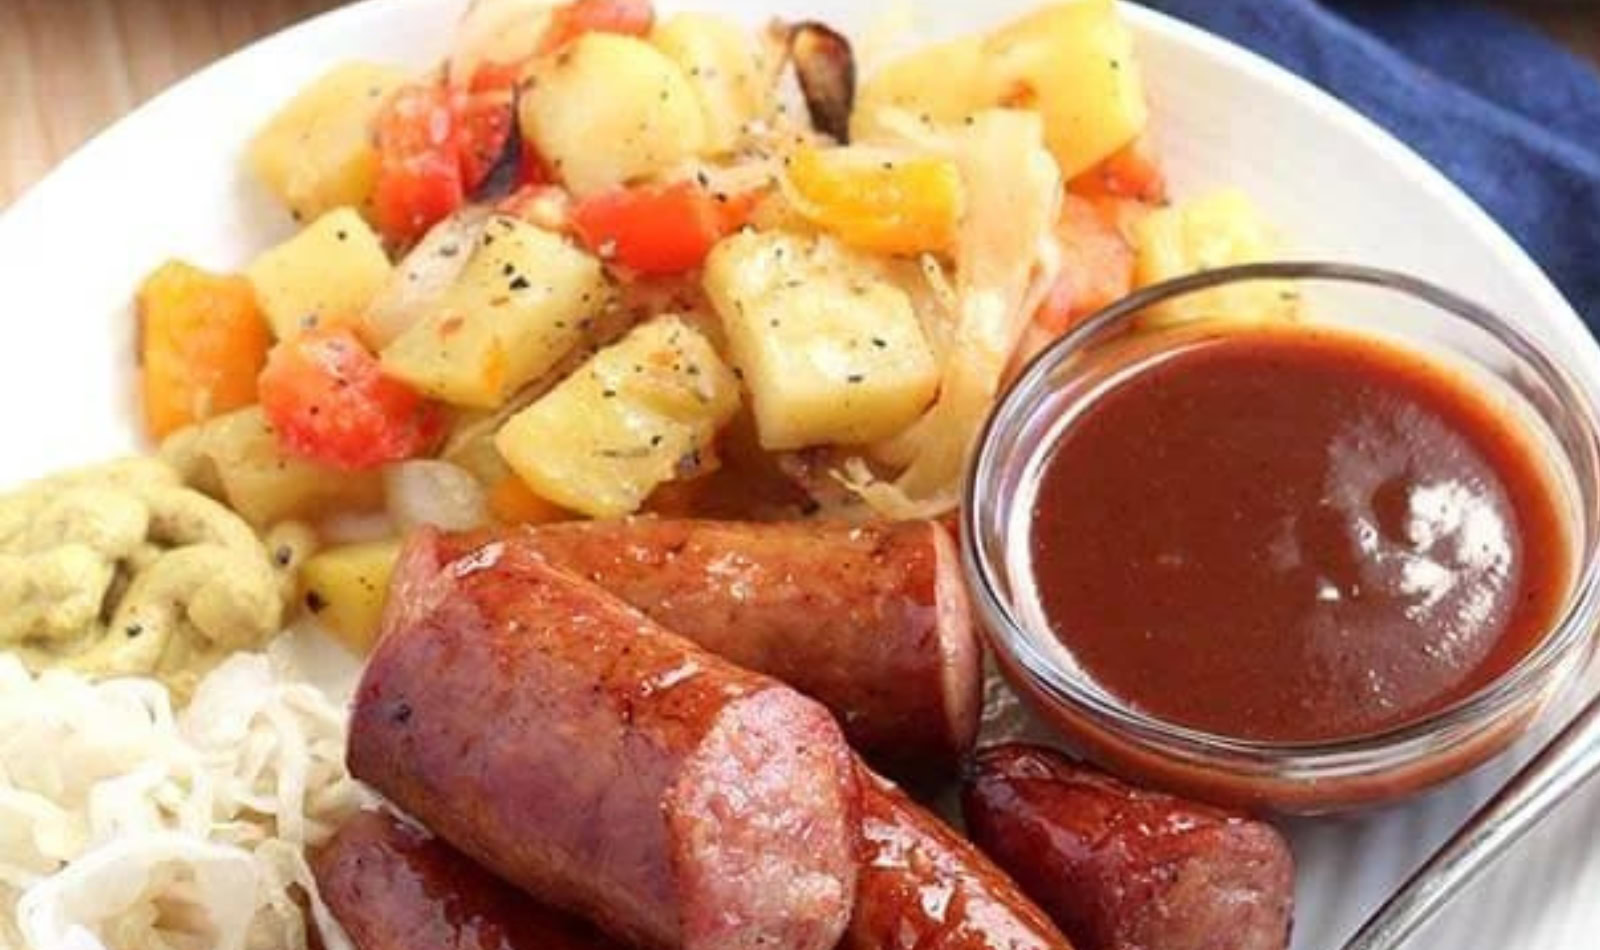 Sausage, Dip and potato cubes and veggies